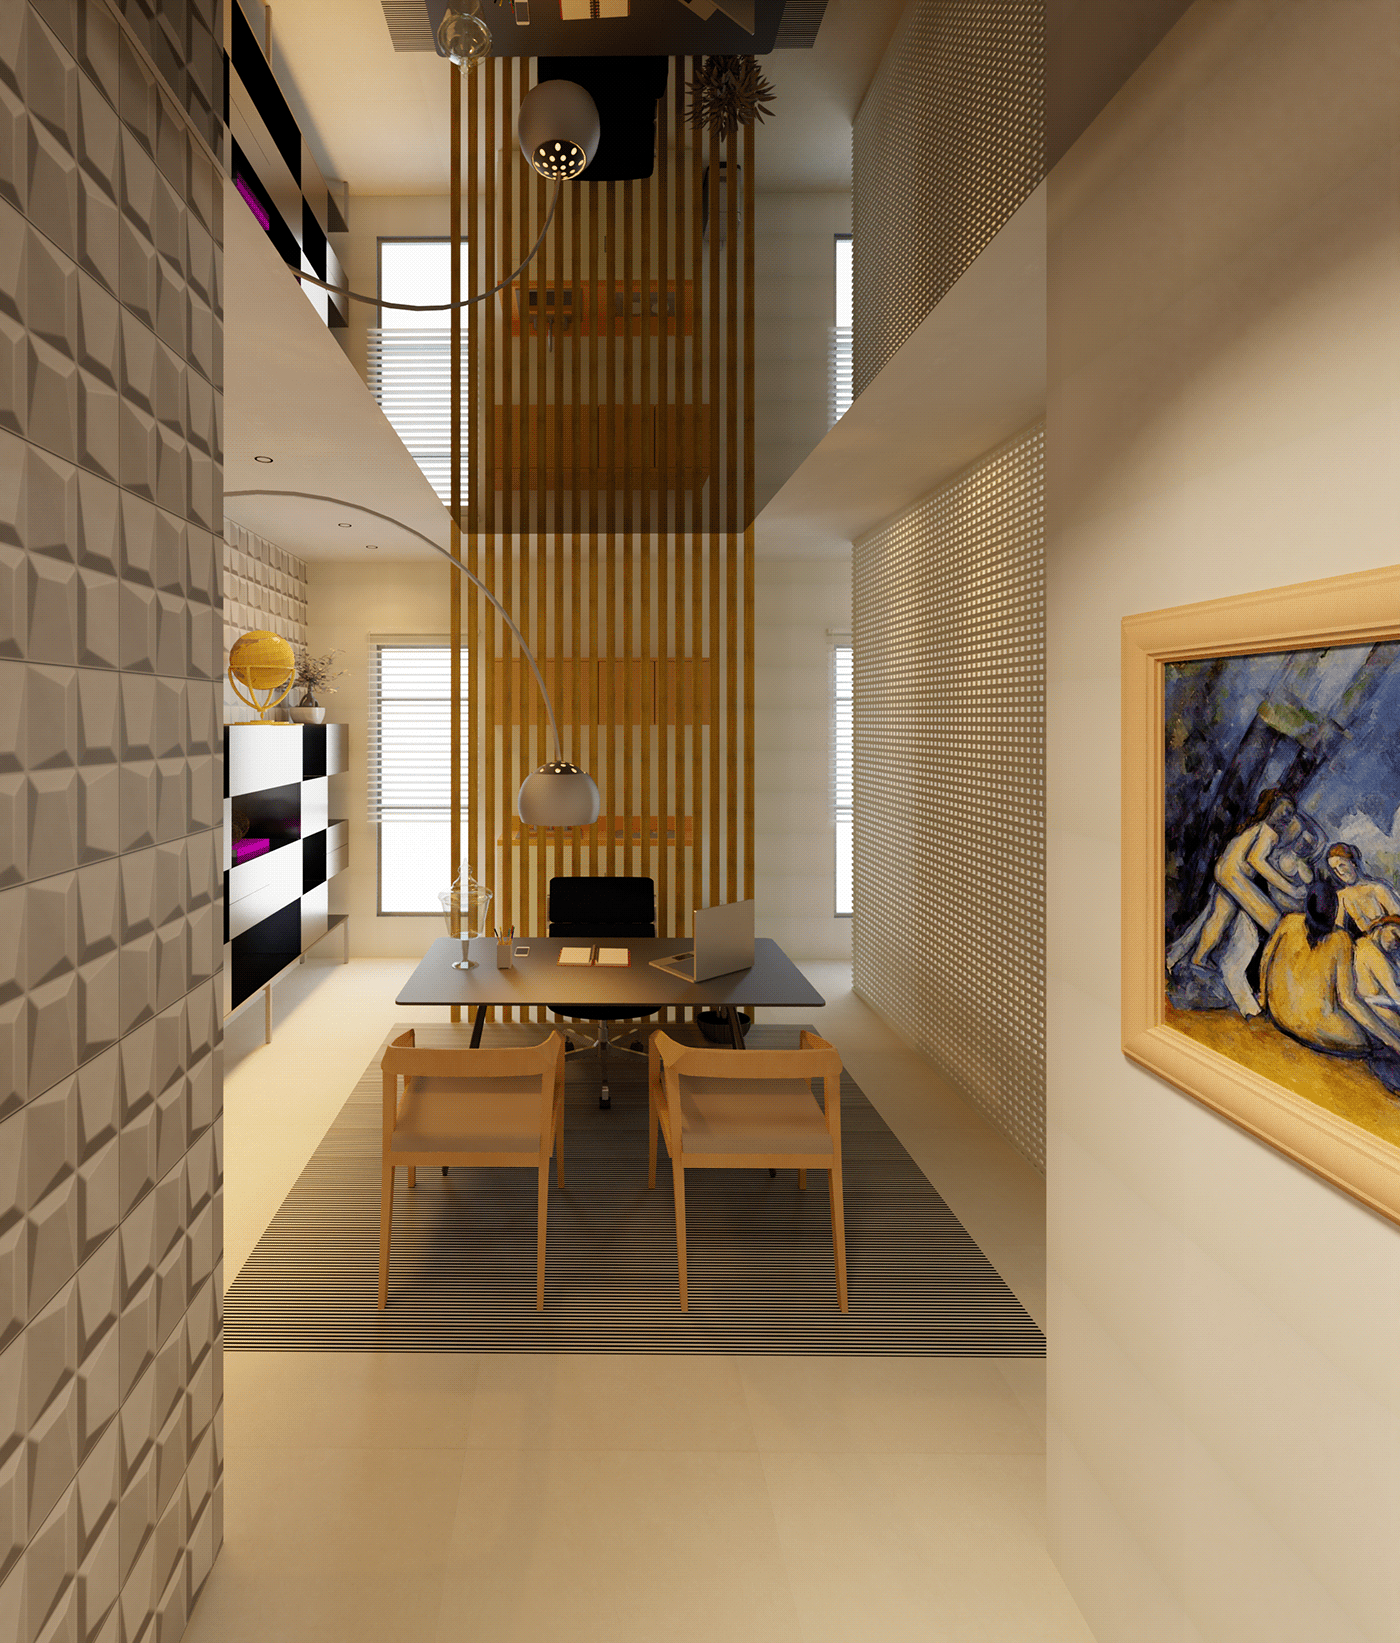 Design para um escritório de arquitetura, em parceria com Fabrício Almeida.